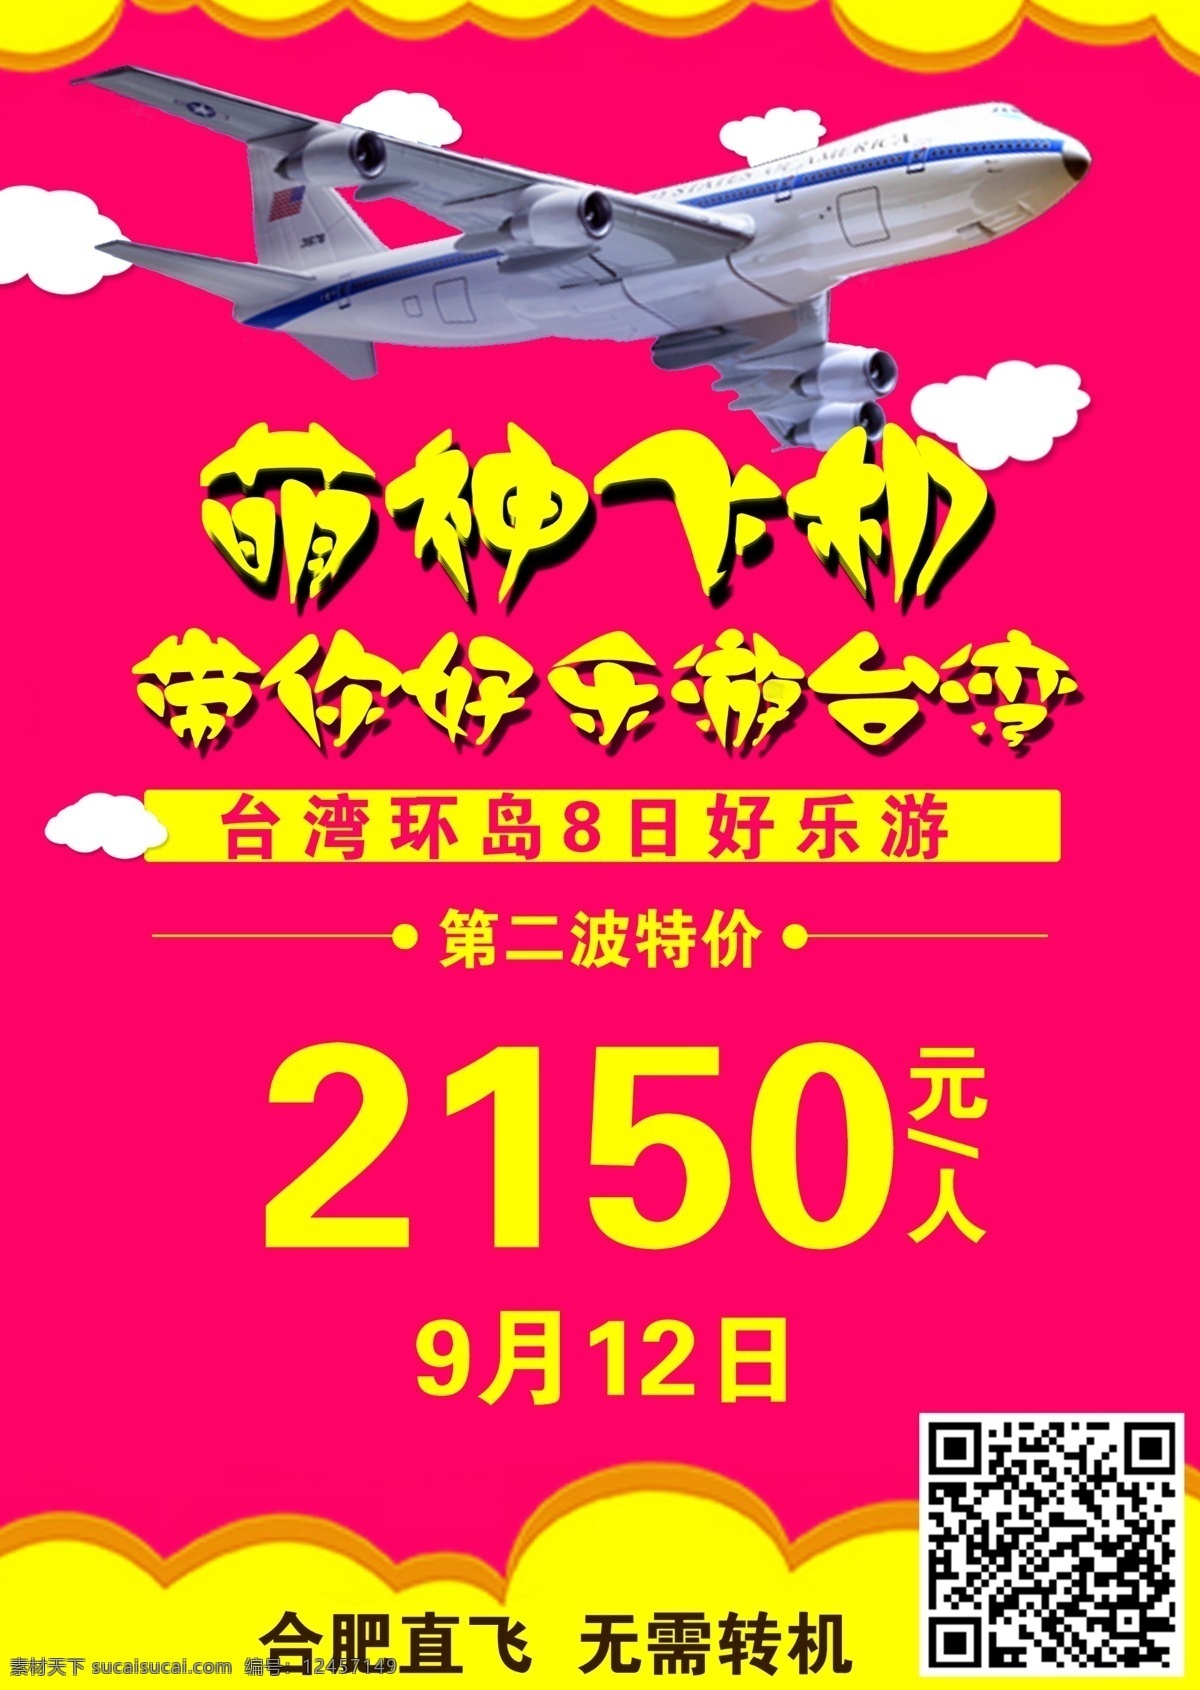 台湾旅游海报 台湾 平面 旅游 海报 飞机